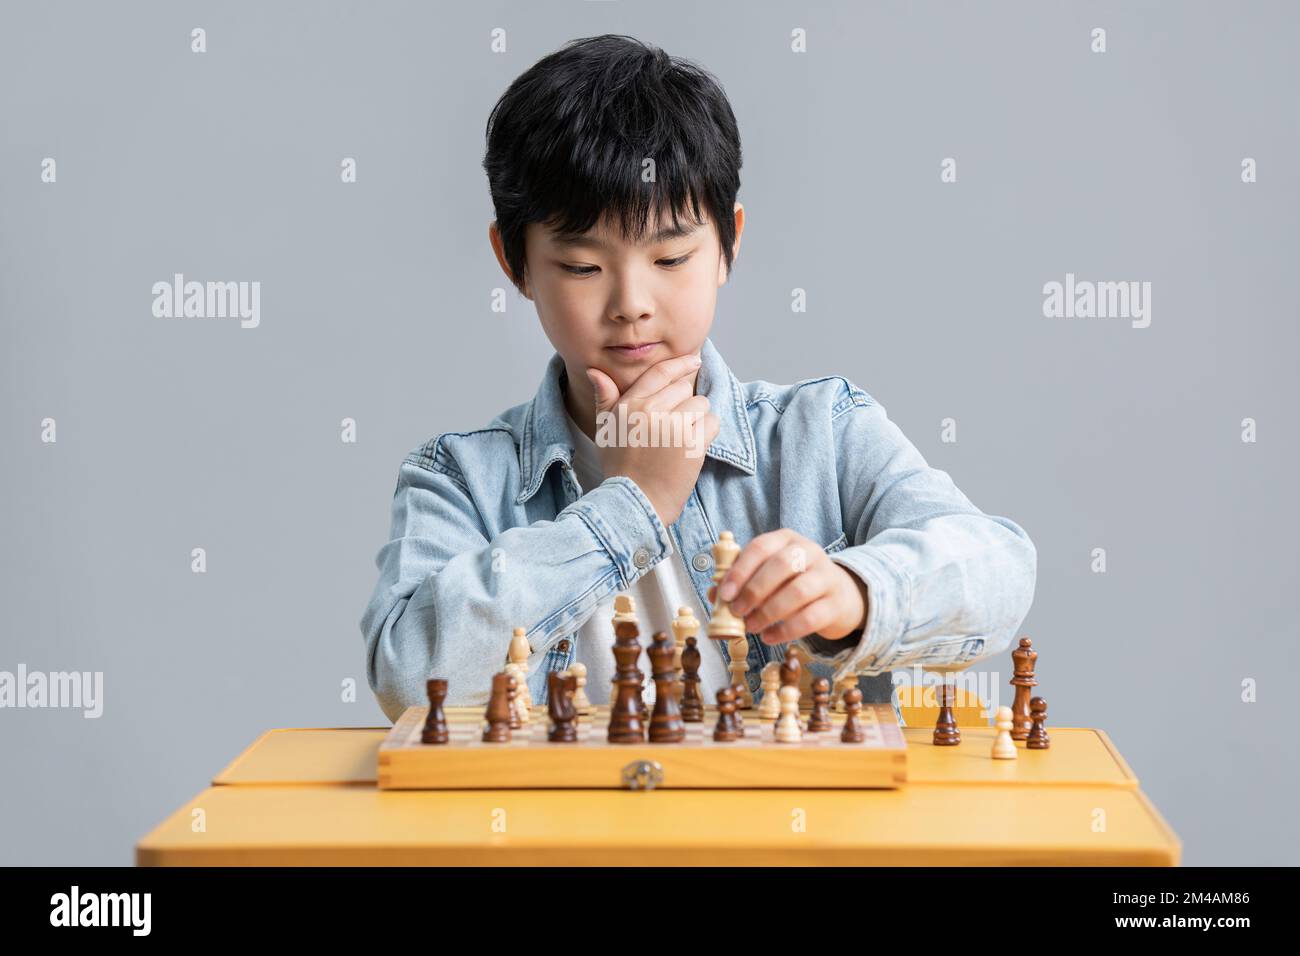 Cute Chinese boy playing chess Stock Photo